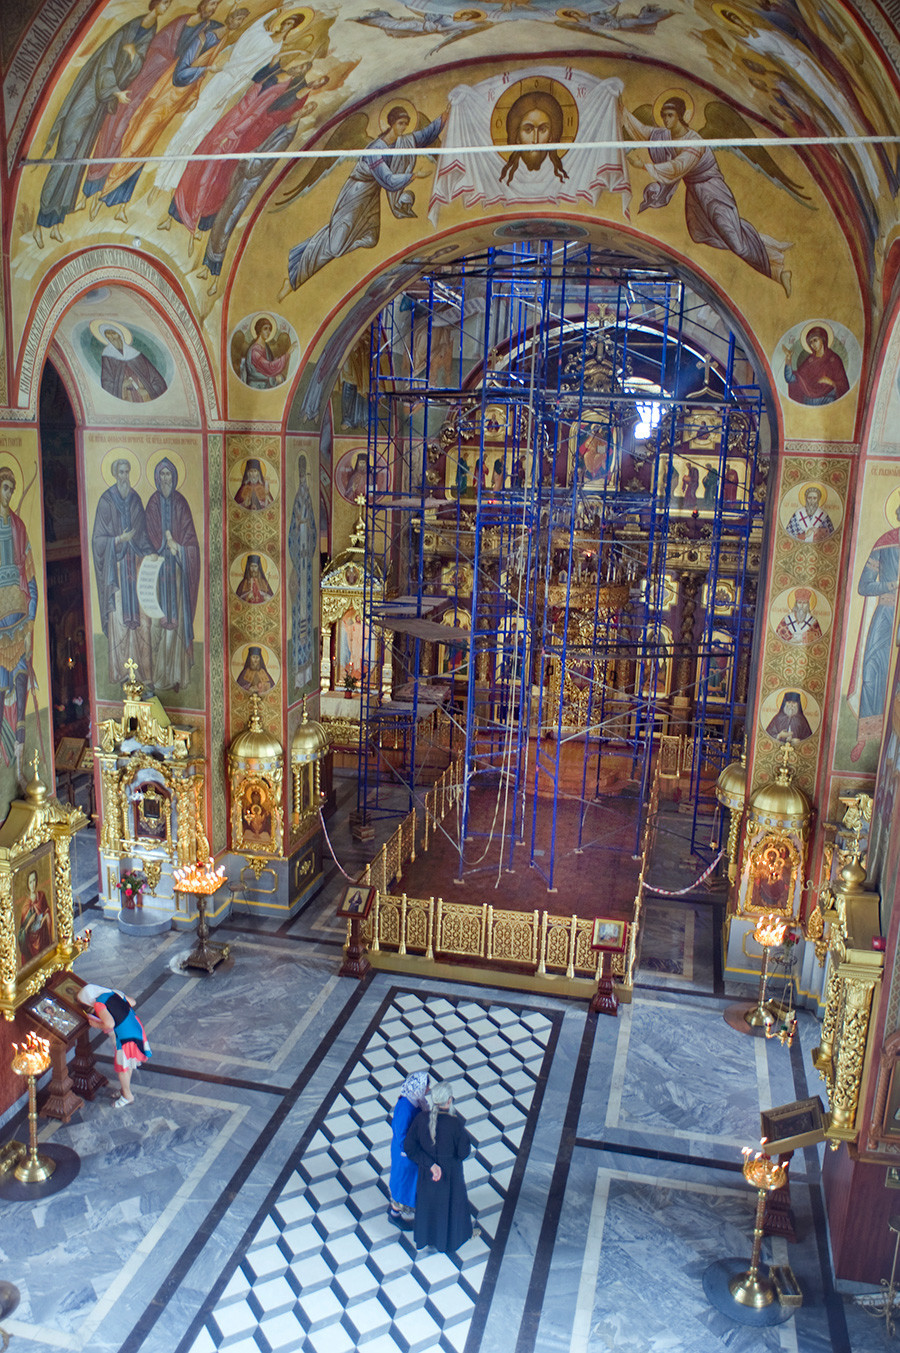 Katedrala Preobraženja, notranjost. Pogled proti vzhodu od kora proti ikonostasu. 24. junij 2015
